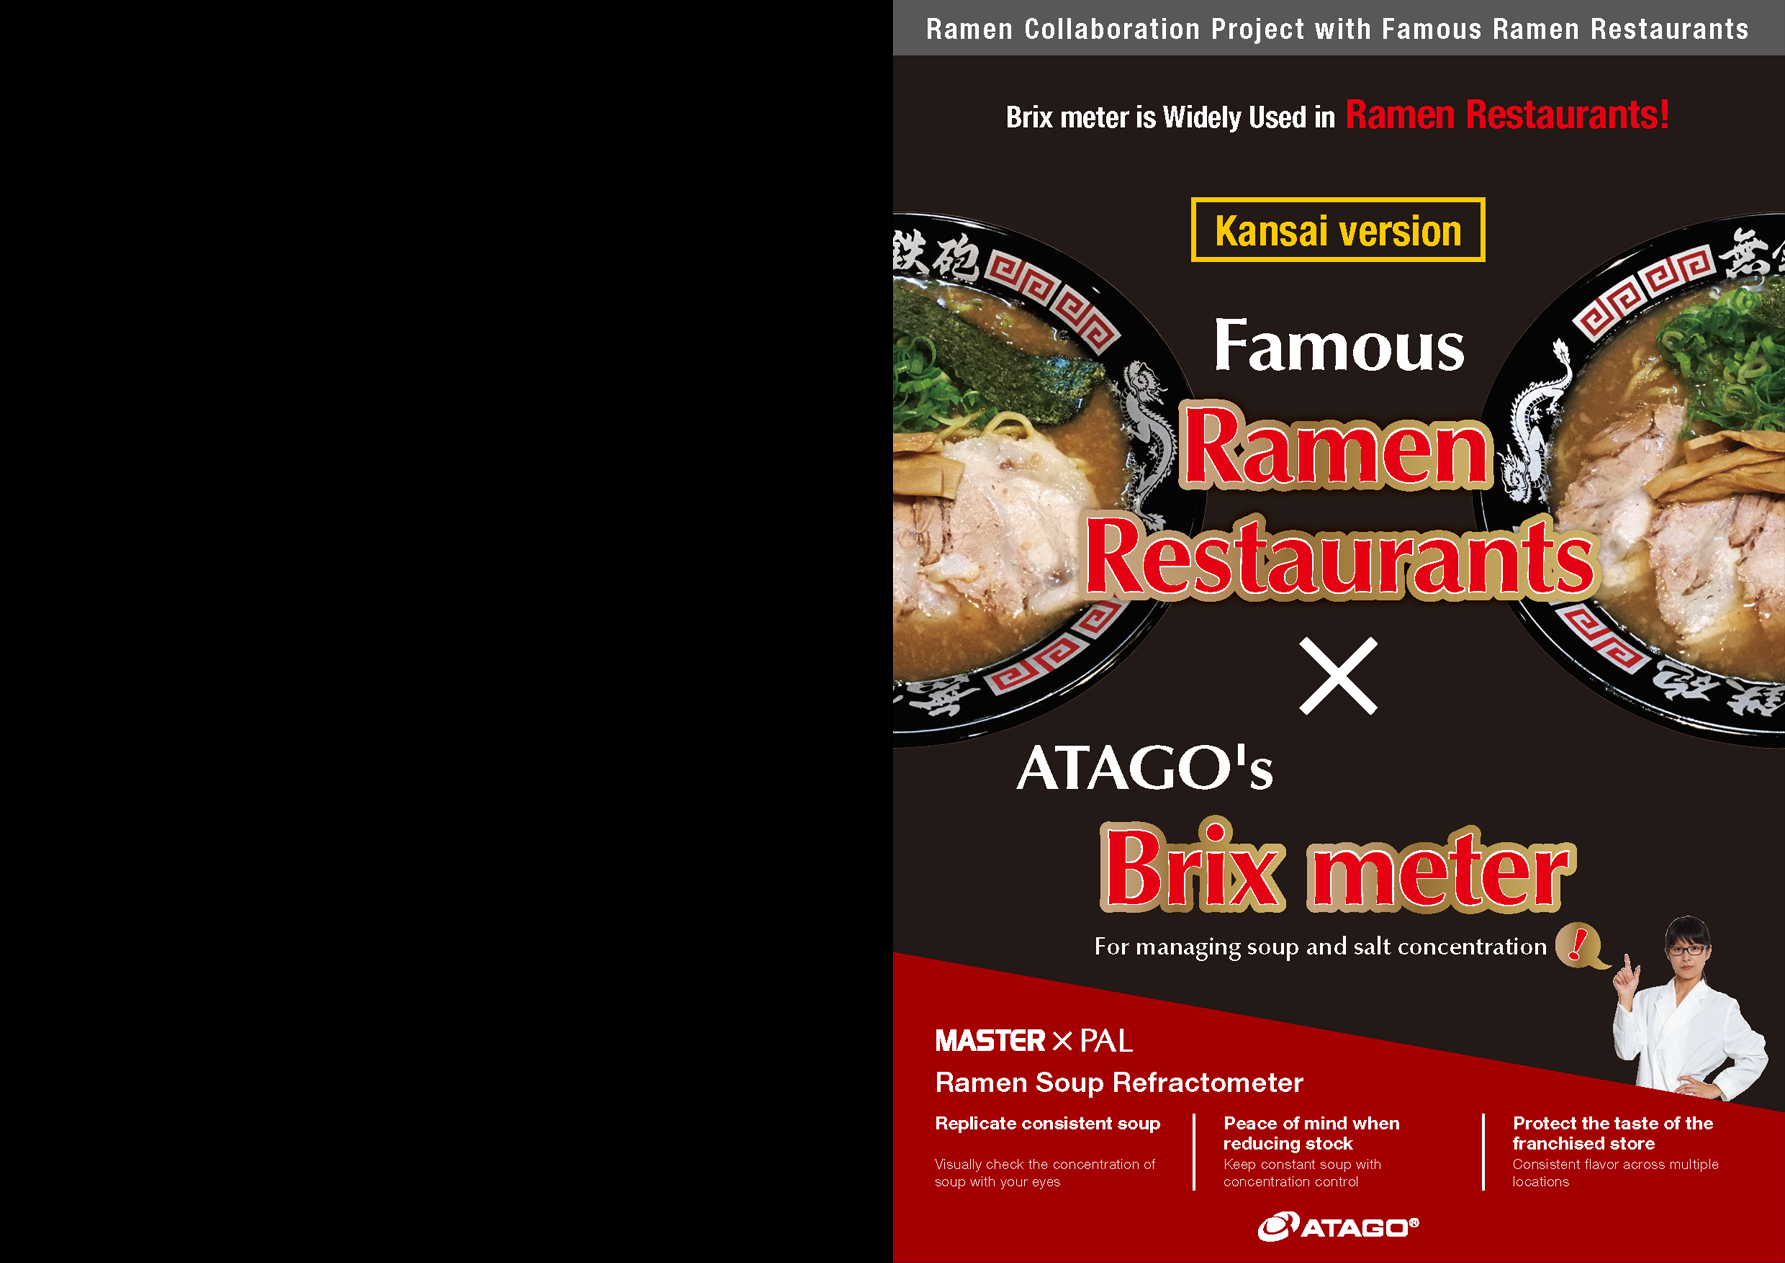 Famous ATAGO's Ramen Restaurants X Brix meter